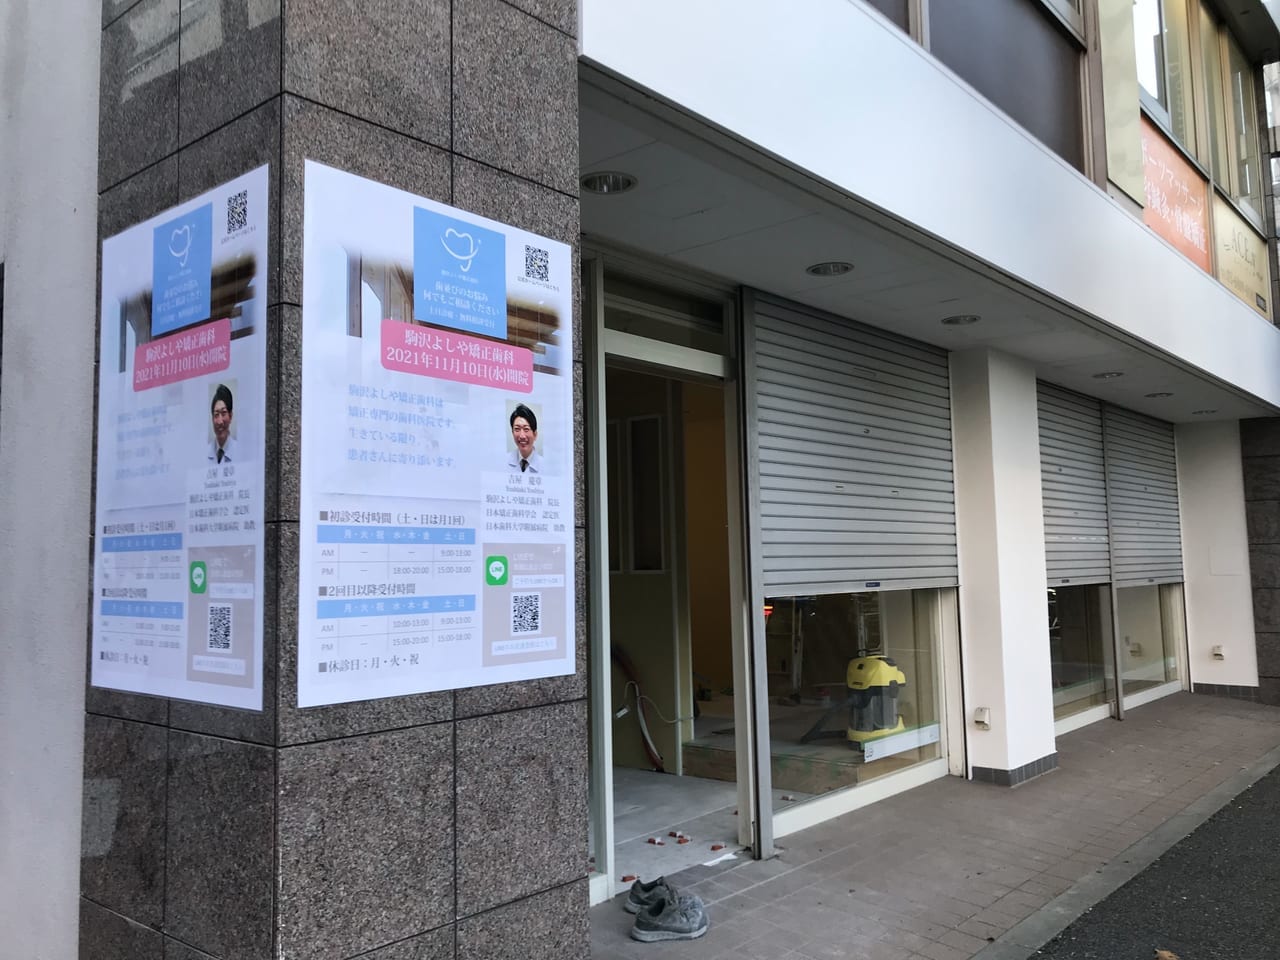 世田谷区駒沢ヘアサロンアッシュの跡地に「駒沢よしや矯正歯科」が2021年11月10日開院する模様。